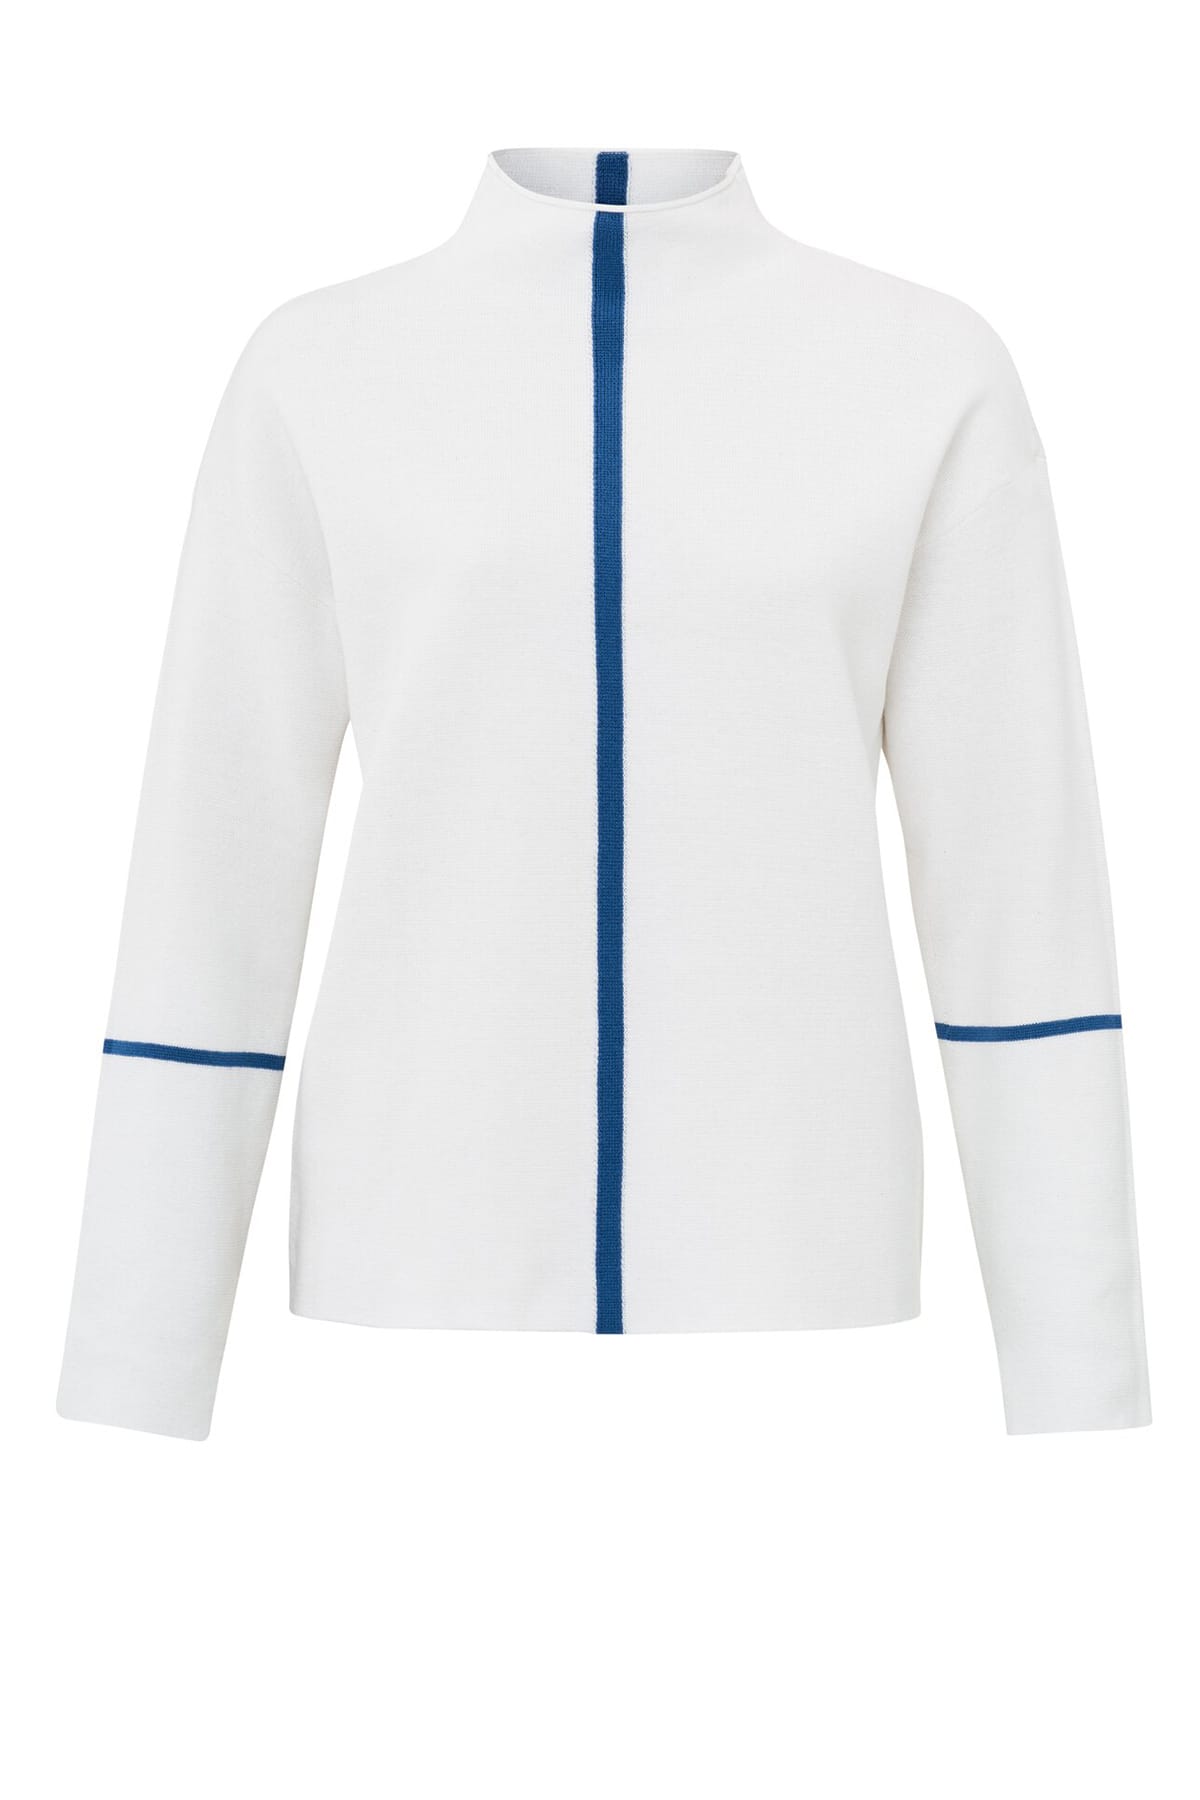 Pullover Langärmeliger Pullover mit Stehkragen und Streifendetail Pure White Pullover YAYA 